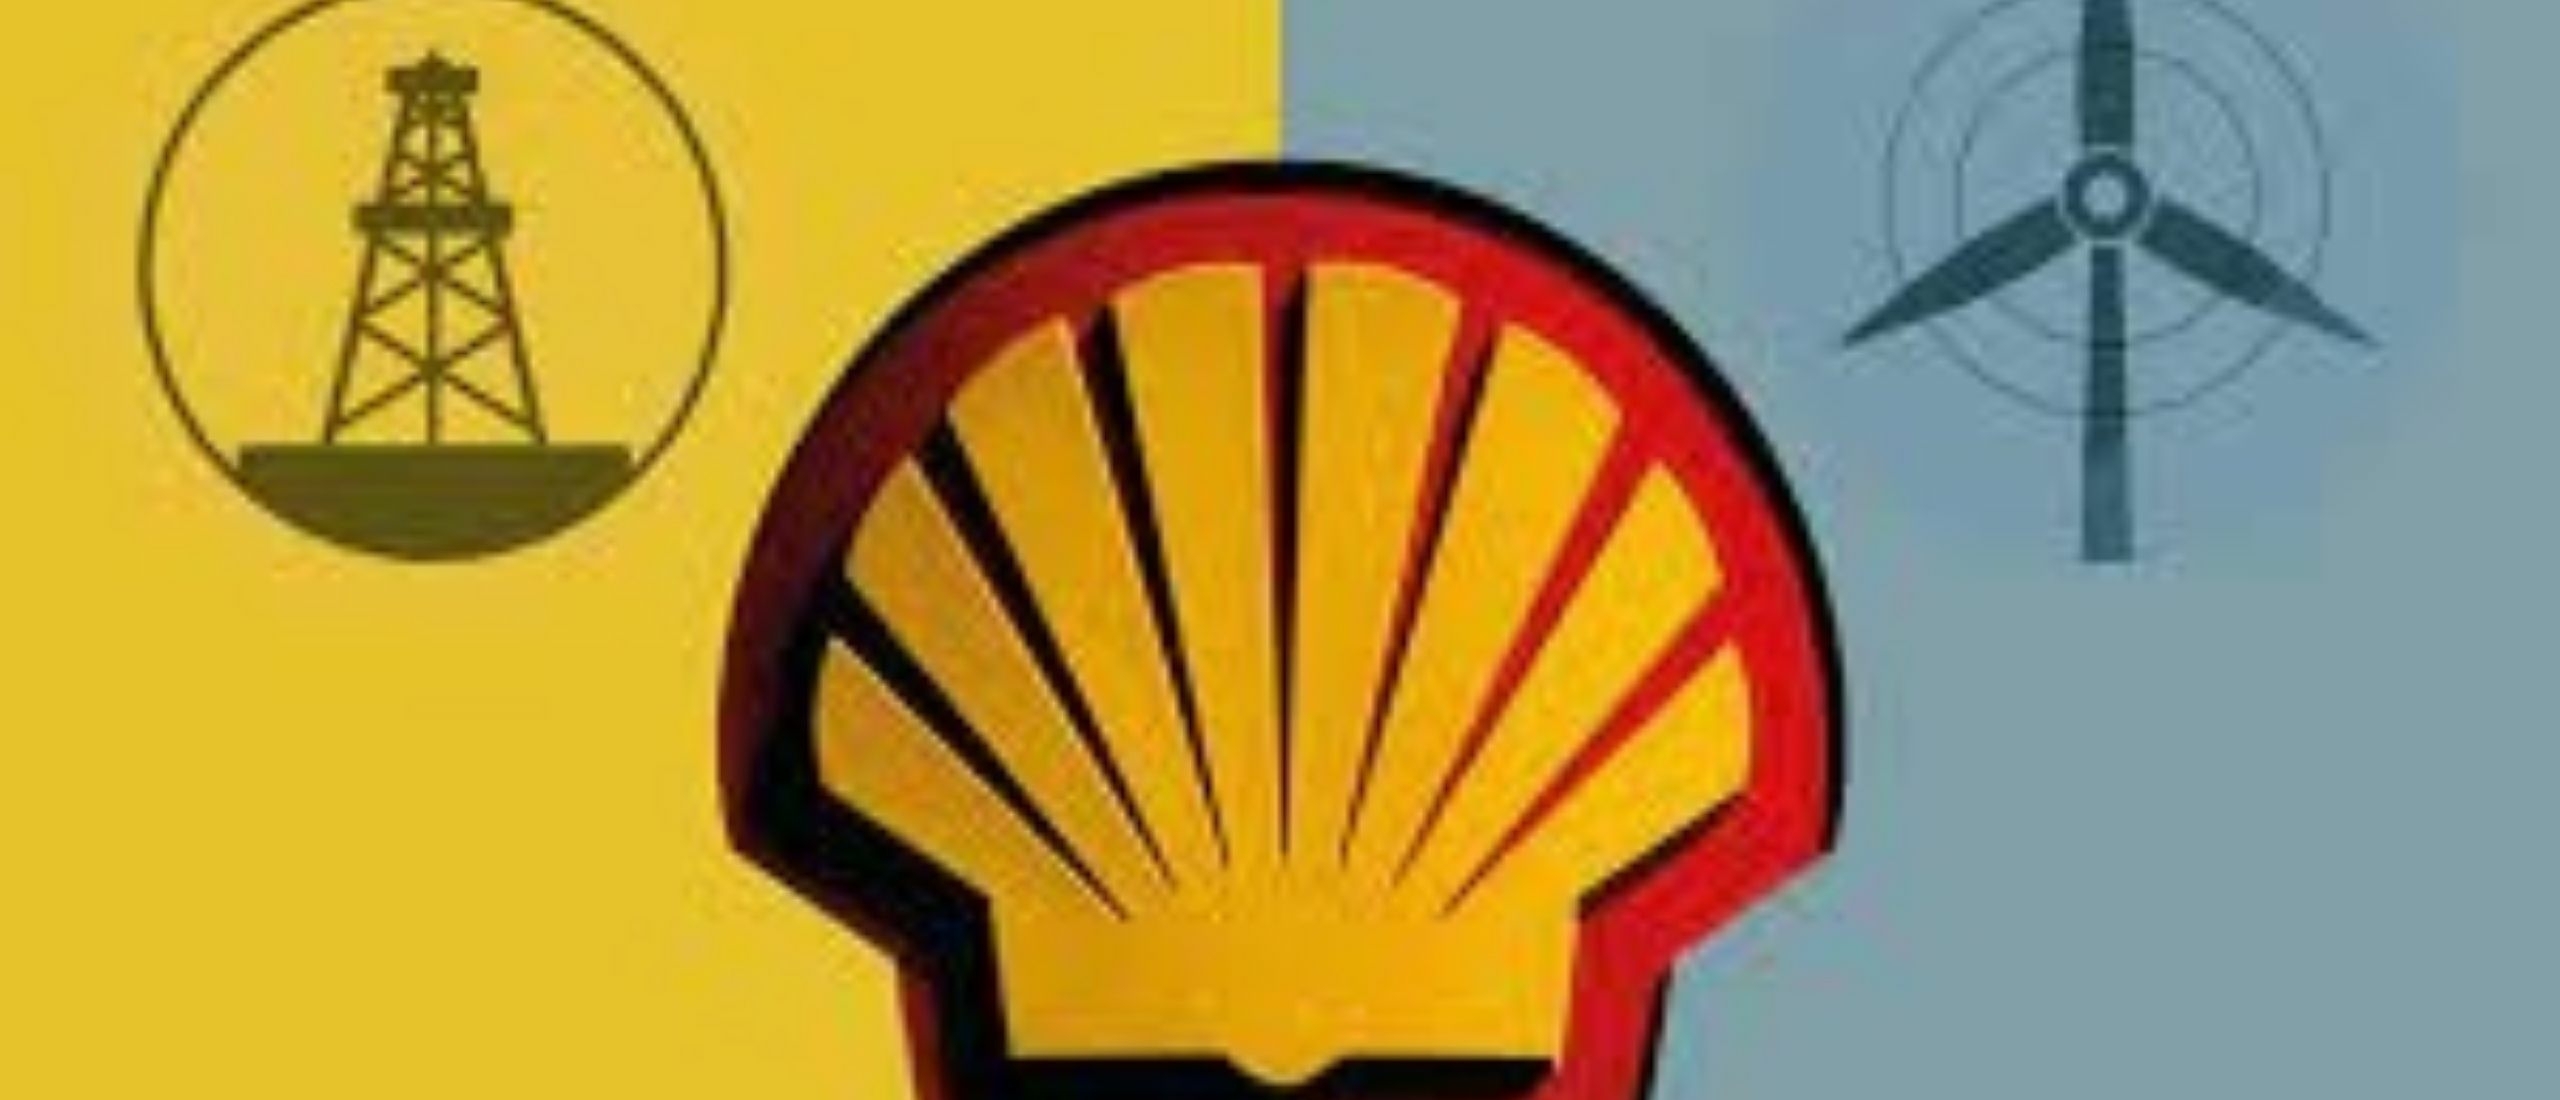 Duurzame beleggers en de rechter dwingen Shell tot meer groene ambitie